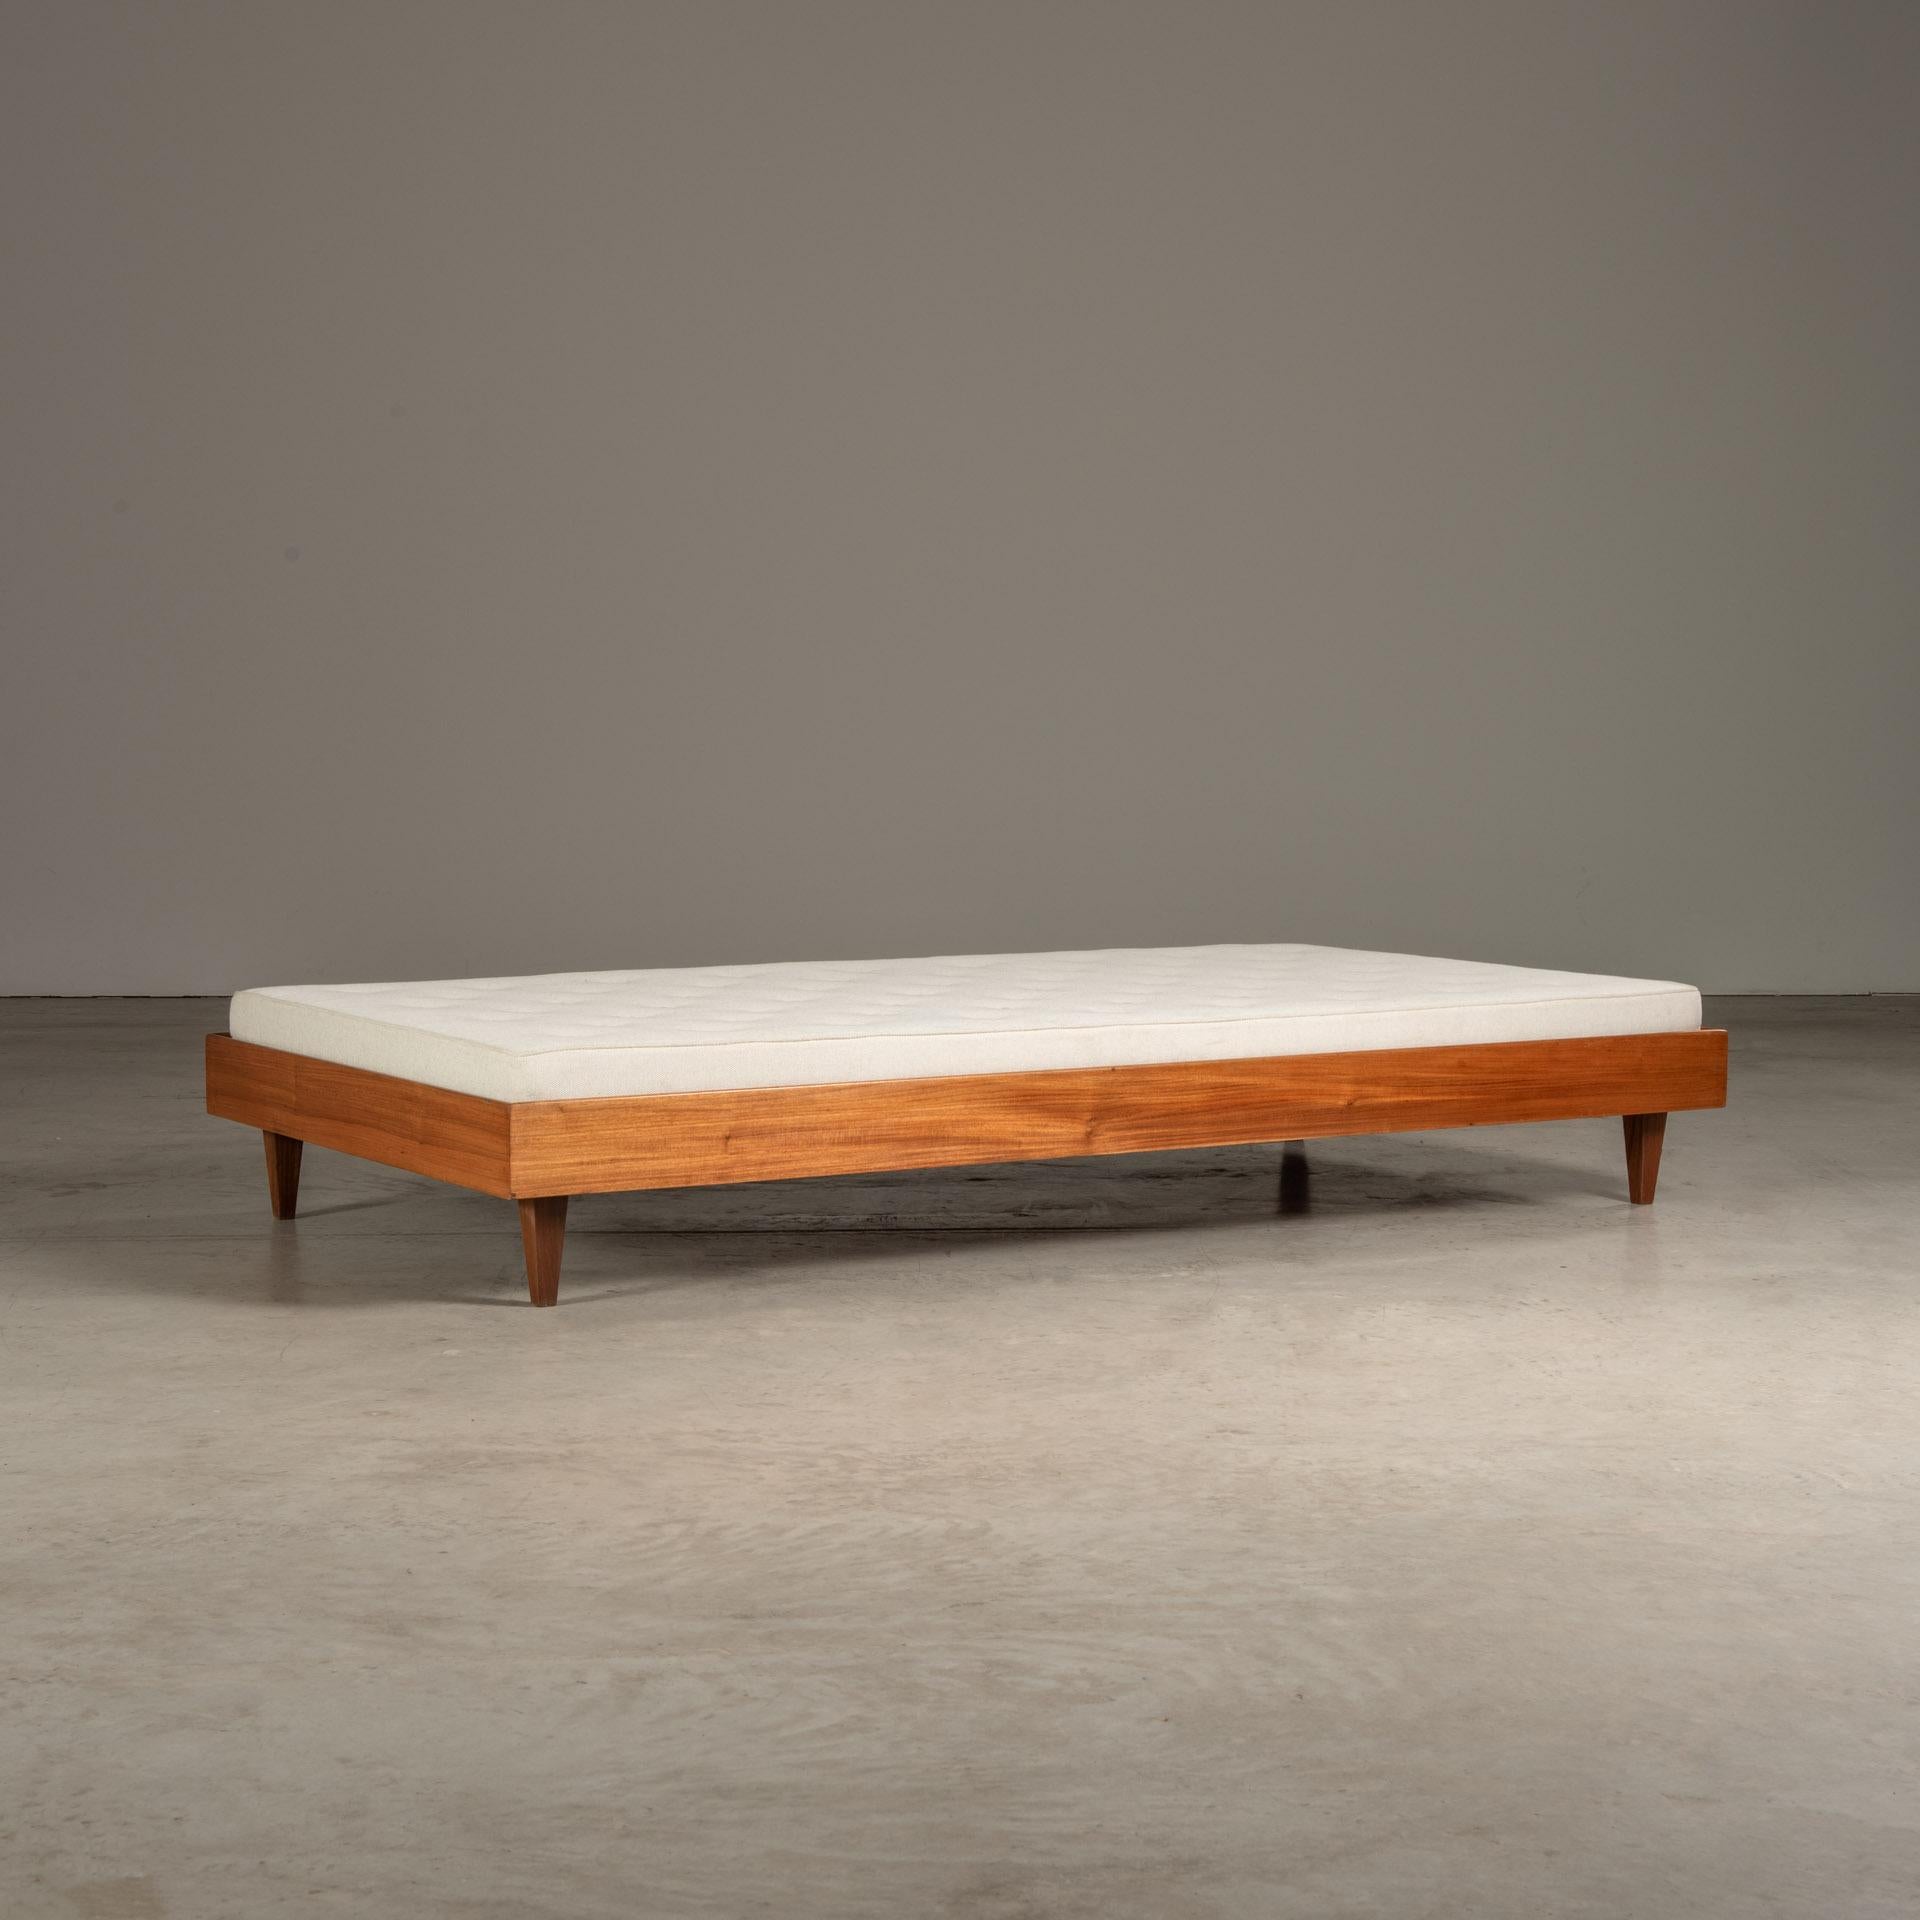 Das von Liceu de Artes e Ofícios hergestellte Tagesbett ist ein Paradebeispiel für brasilianisches Möbeldesign aus der Mitte des 20. Jahrhunderts, das für seine Verbindung von modernistischen Prinzipien mit traditionellen brasilianischen Materialien